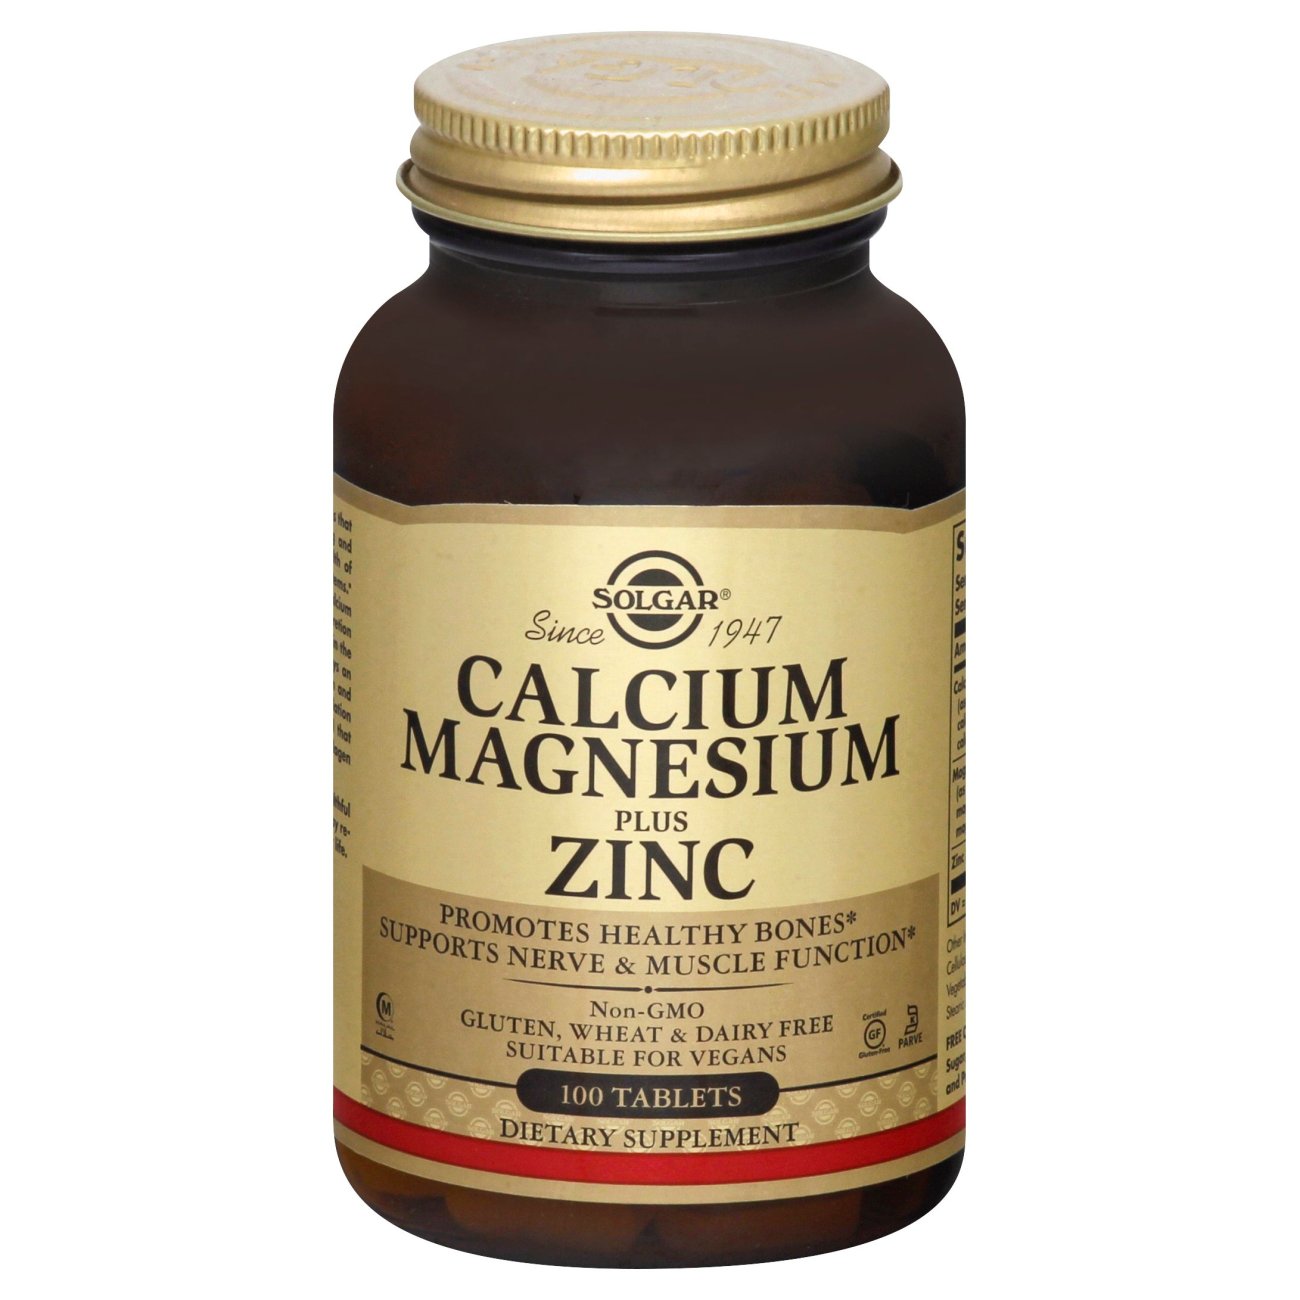 Calcium Magnesium Zinc Tablets - Shop Vitamins & Supplements at